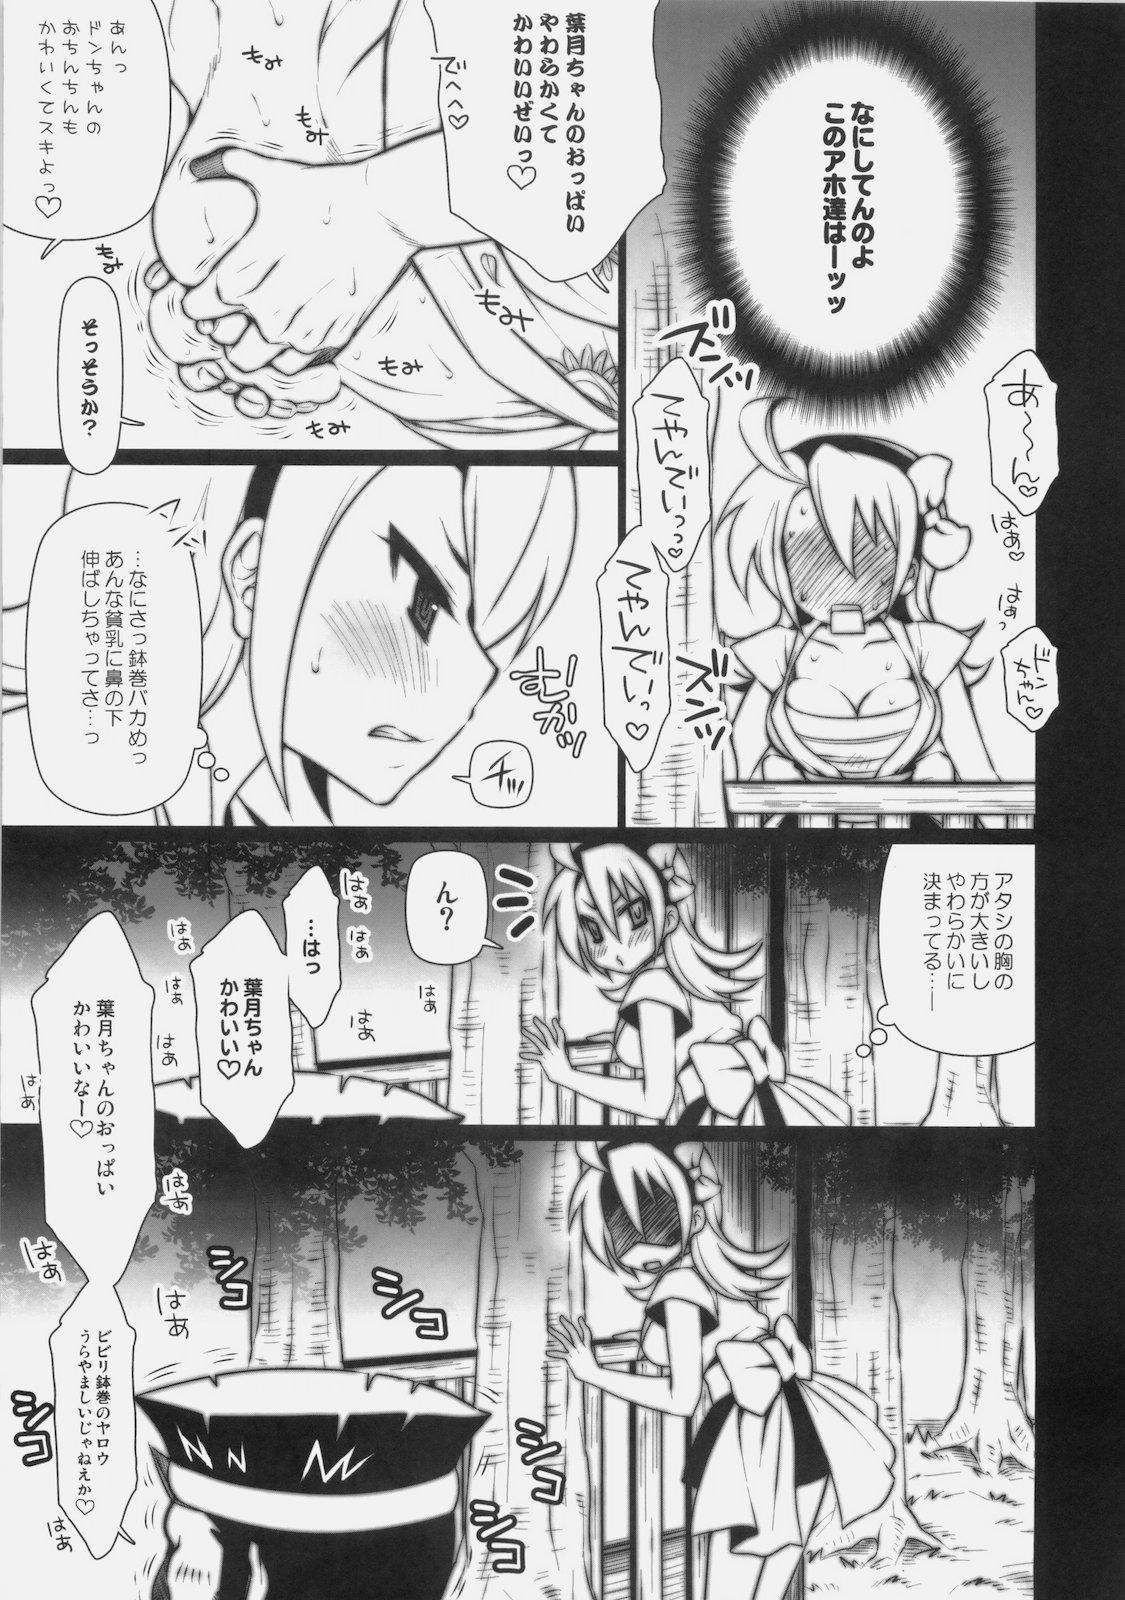 Penis Matsuri no Yoru ni - Ao don hanabi no kiwami Casa - Page 4